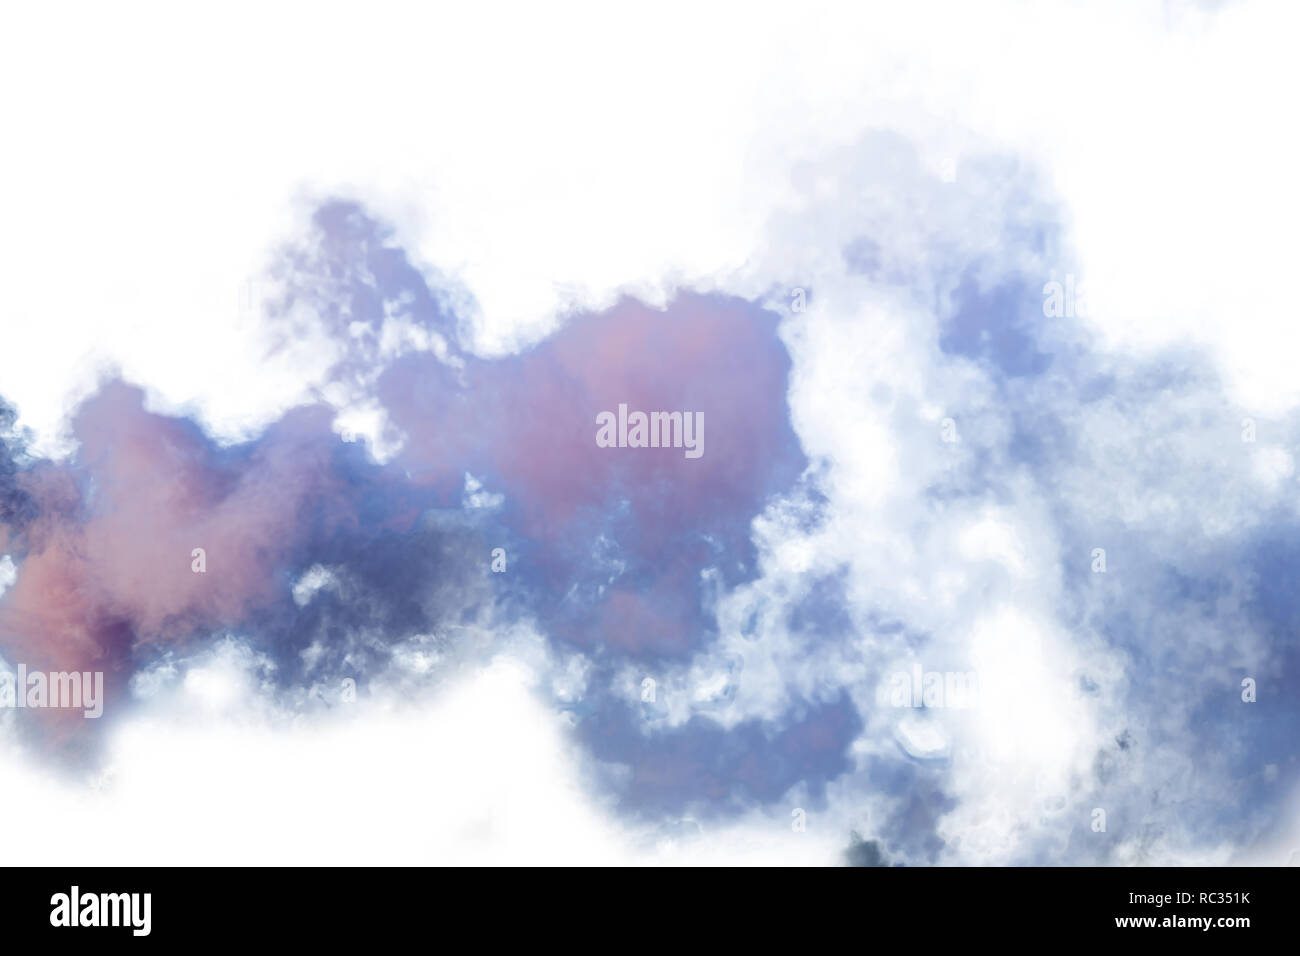 Viola e viola il fumo isolati su sfondo bianco Foto Stock